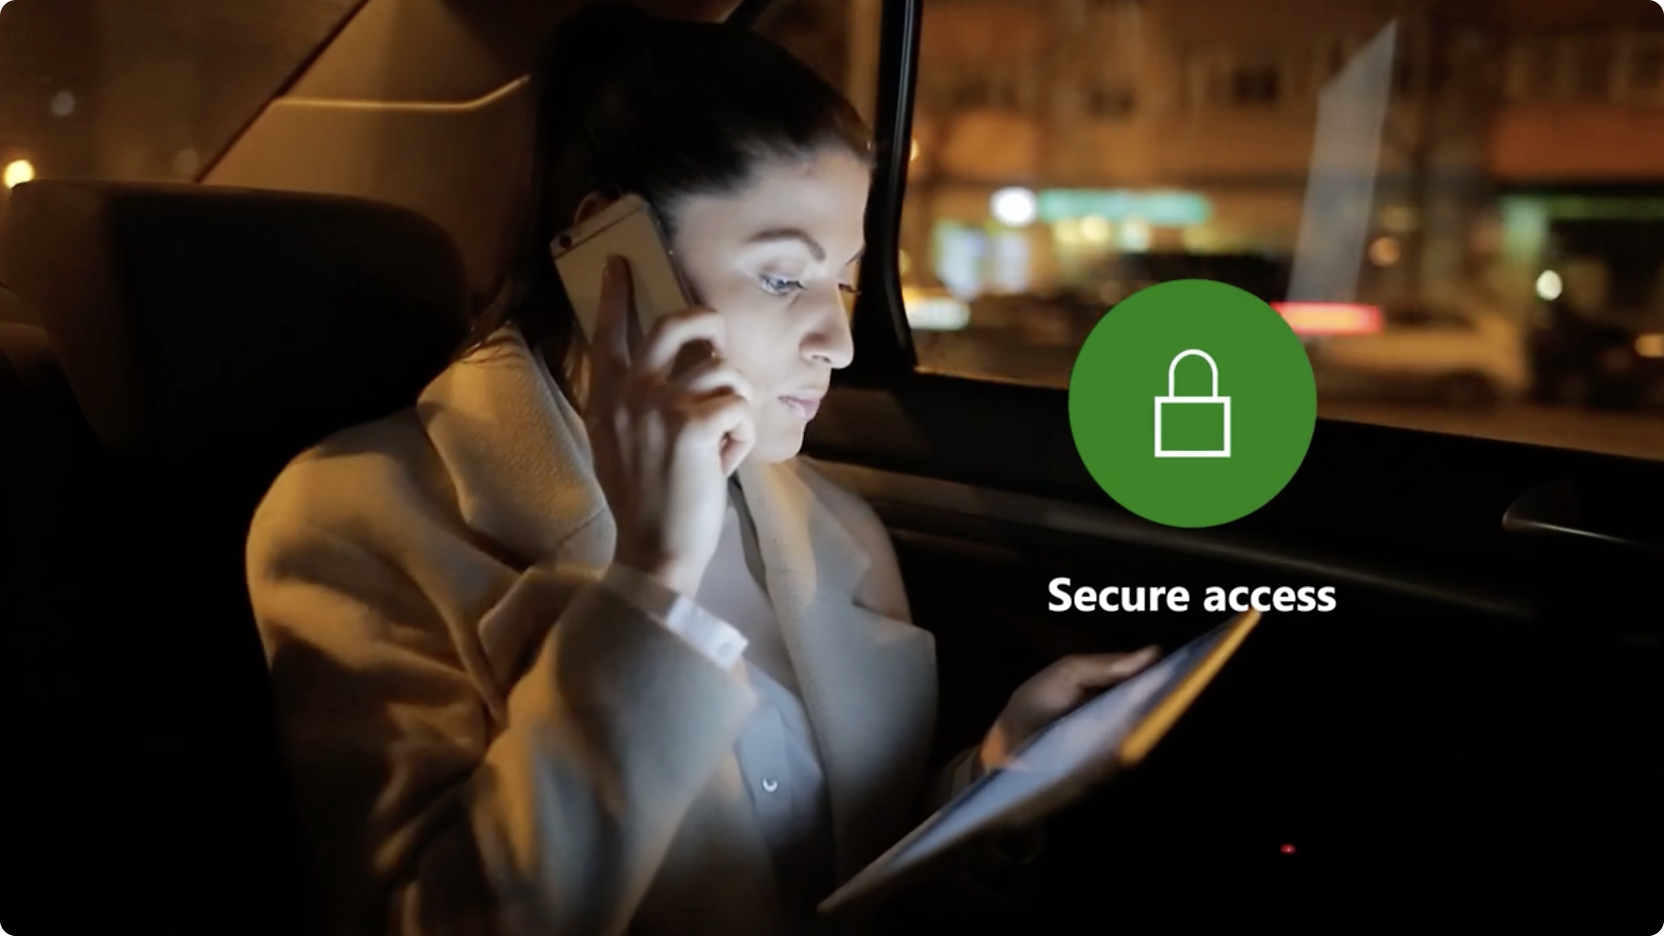 Una mujer en un coche por la noche hablando por teléfono y usando una tableta, con un icono de "acceso seguro" en la pantalla.